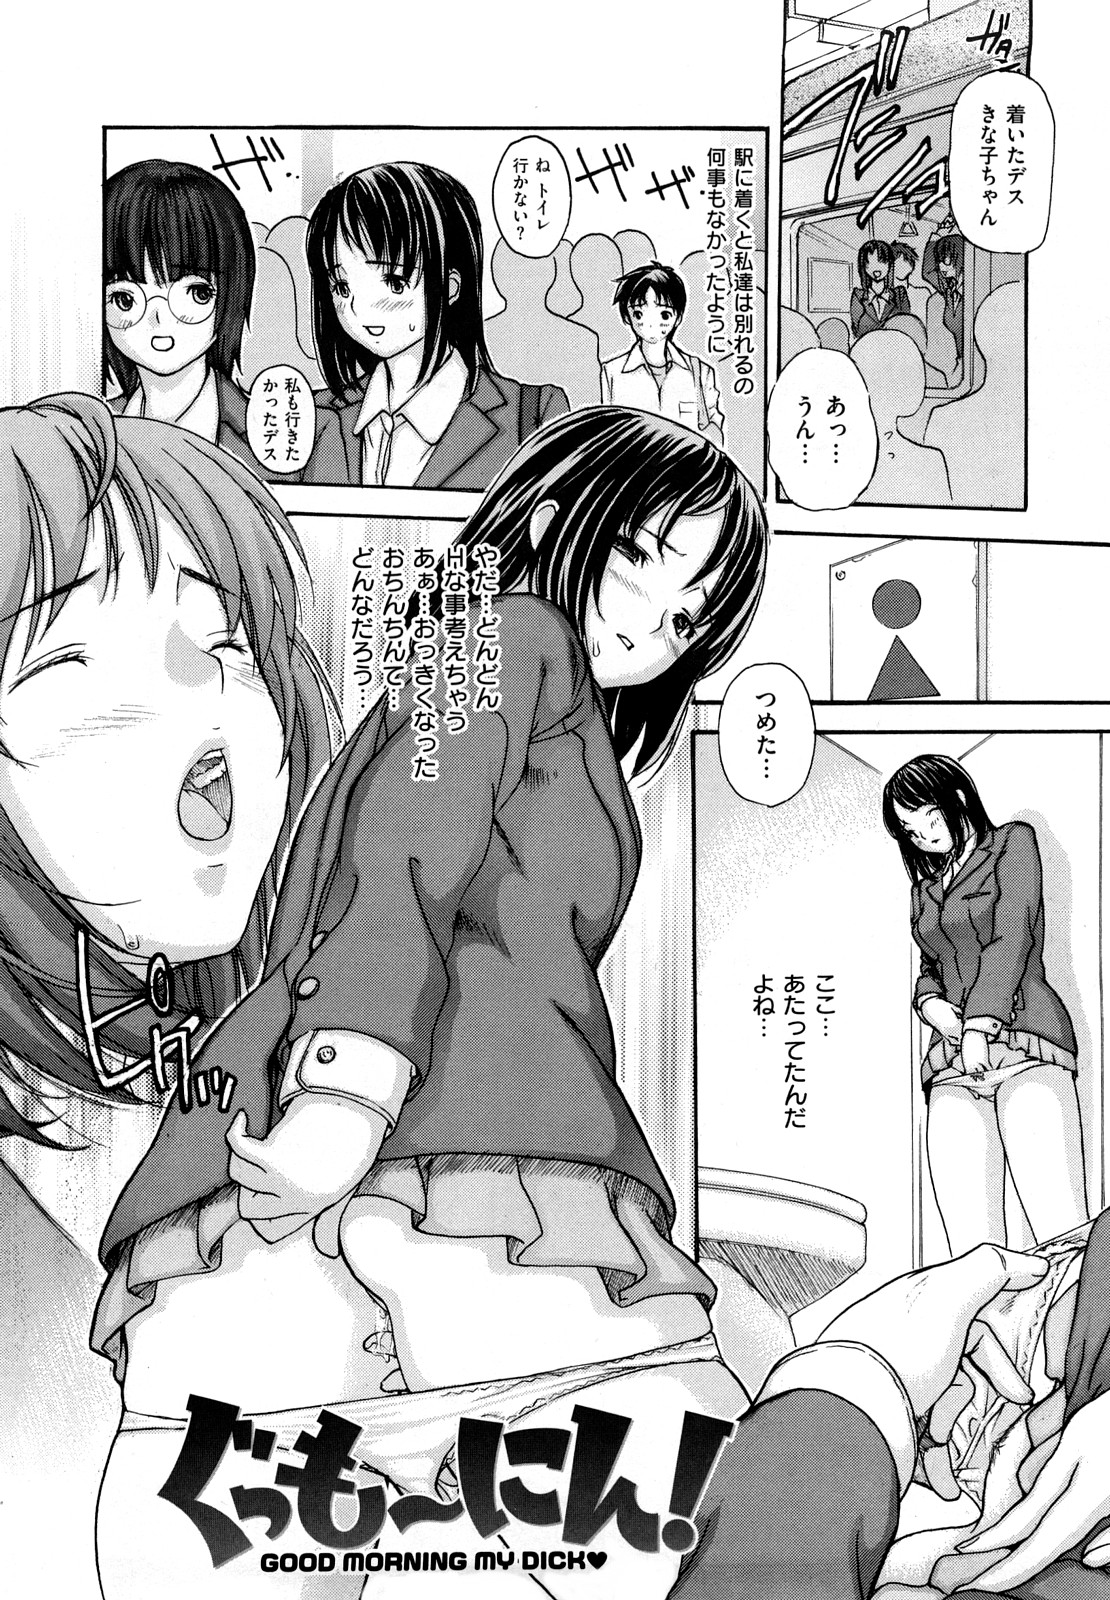 [MG Joe] Hanamaru Bitch page 7 full